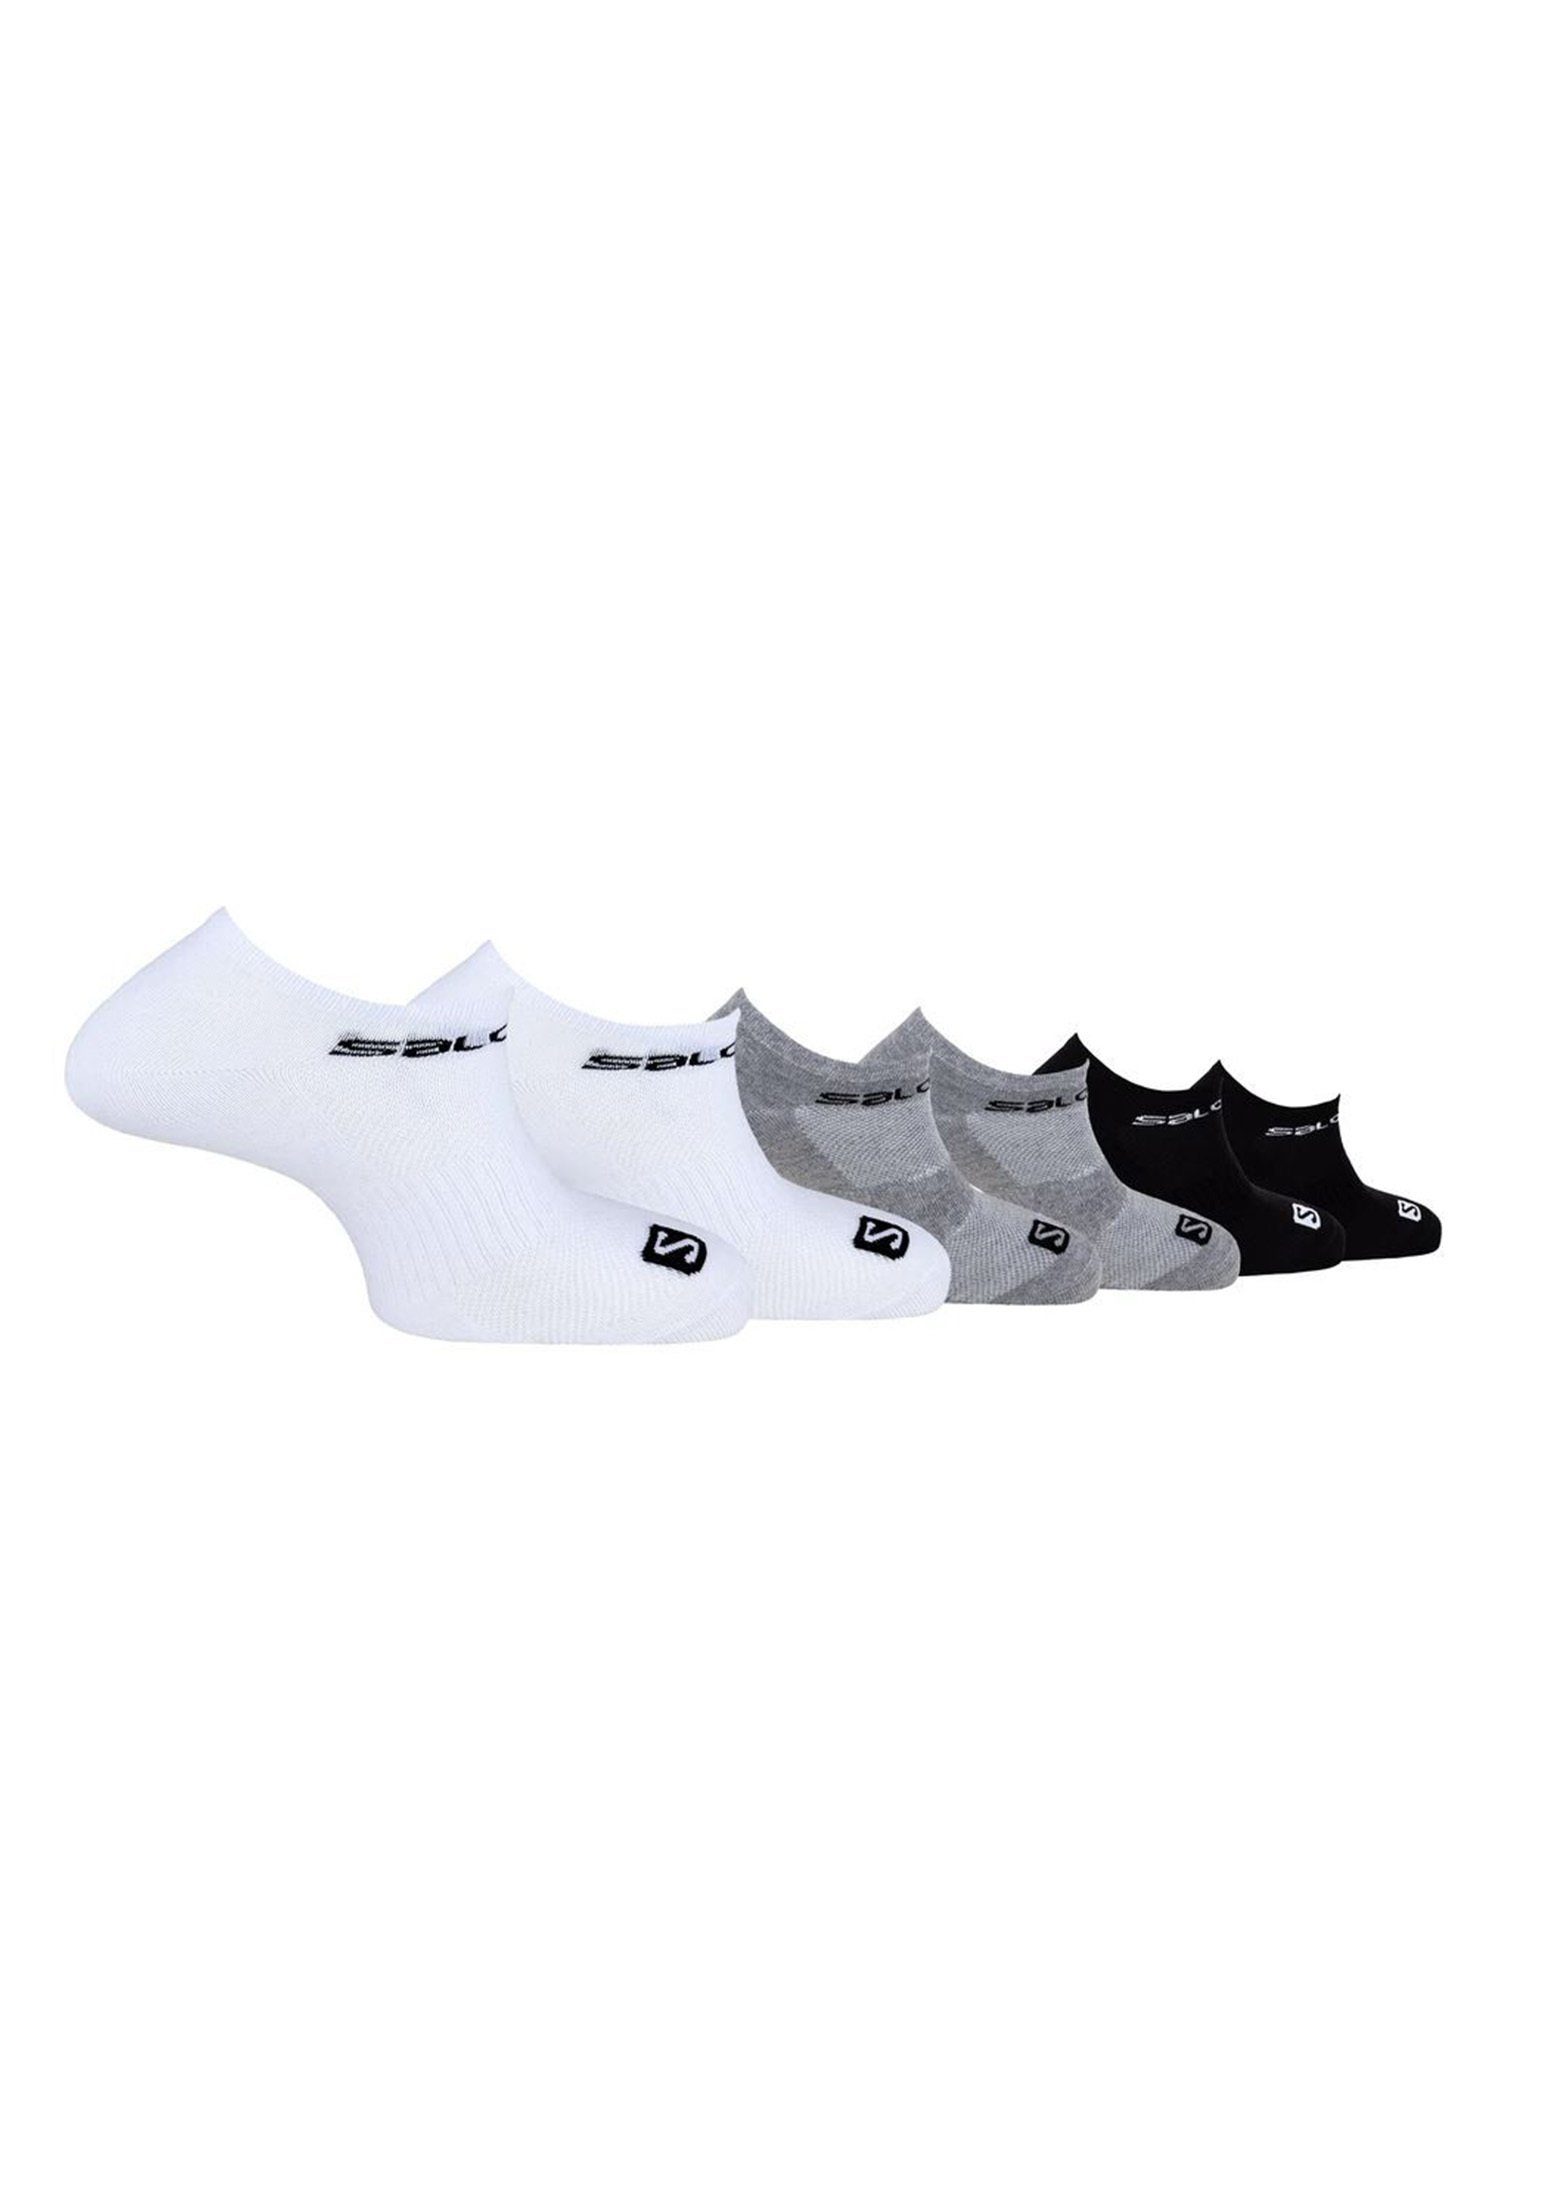 Salomon Sportsocken black/white/grey Pack Sportsocken 6er